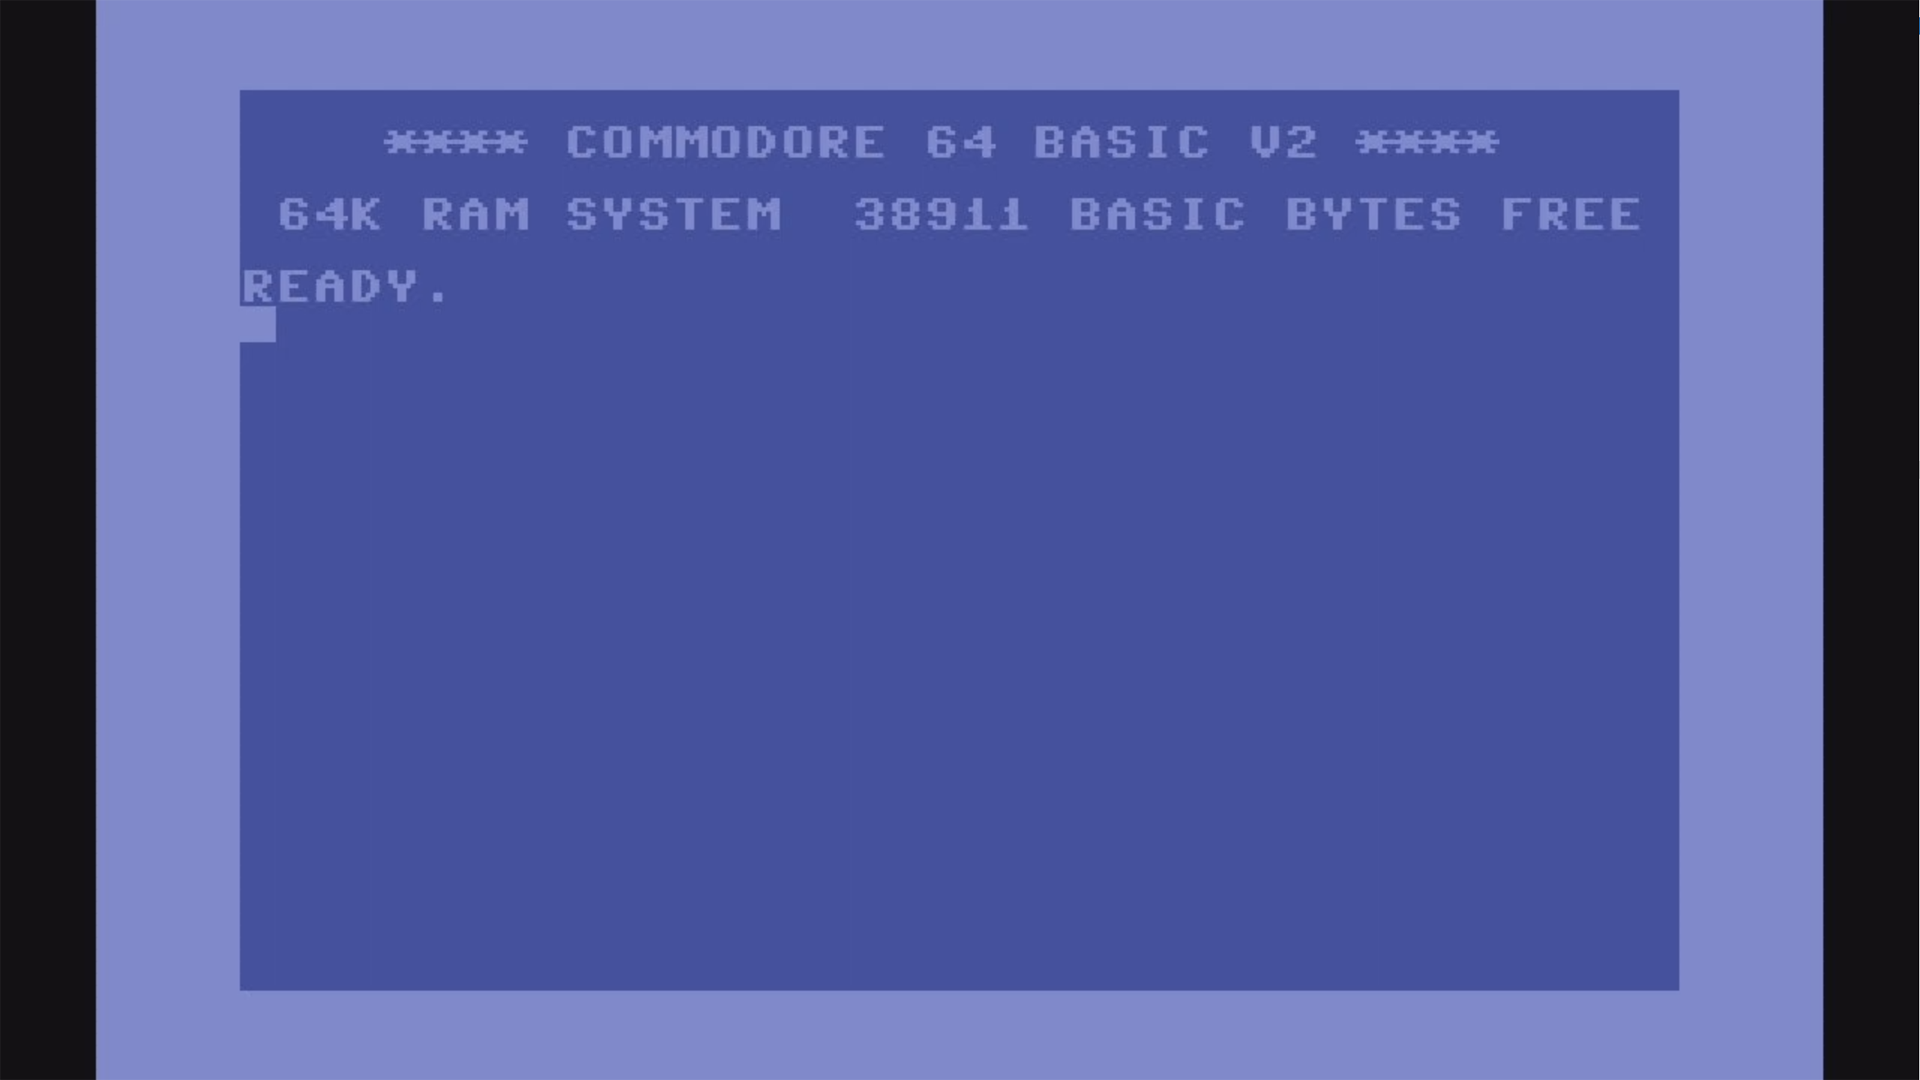 Retro Games LTD, THEC64 Mini Computer, Gray - image 7 of 13